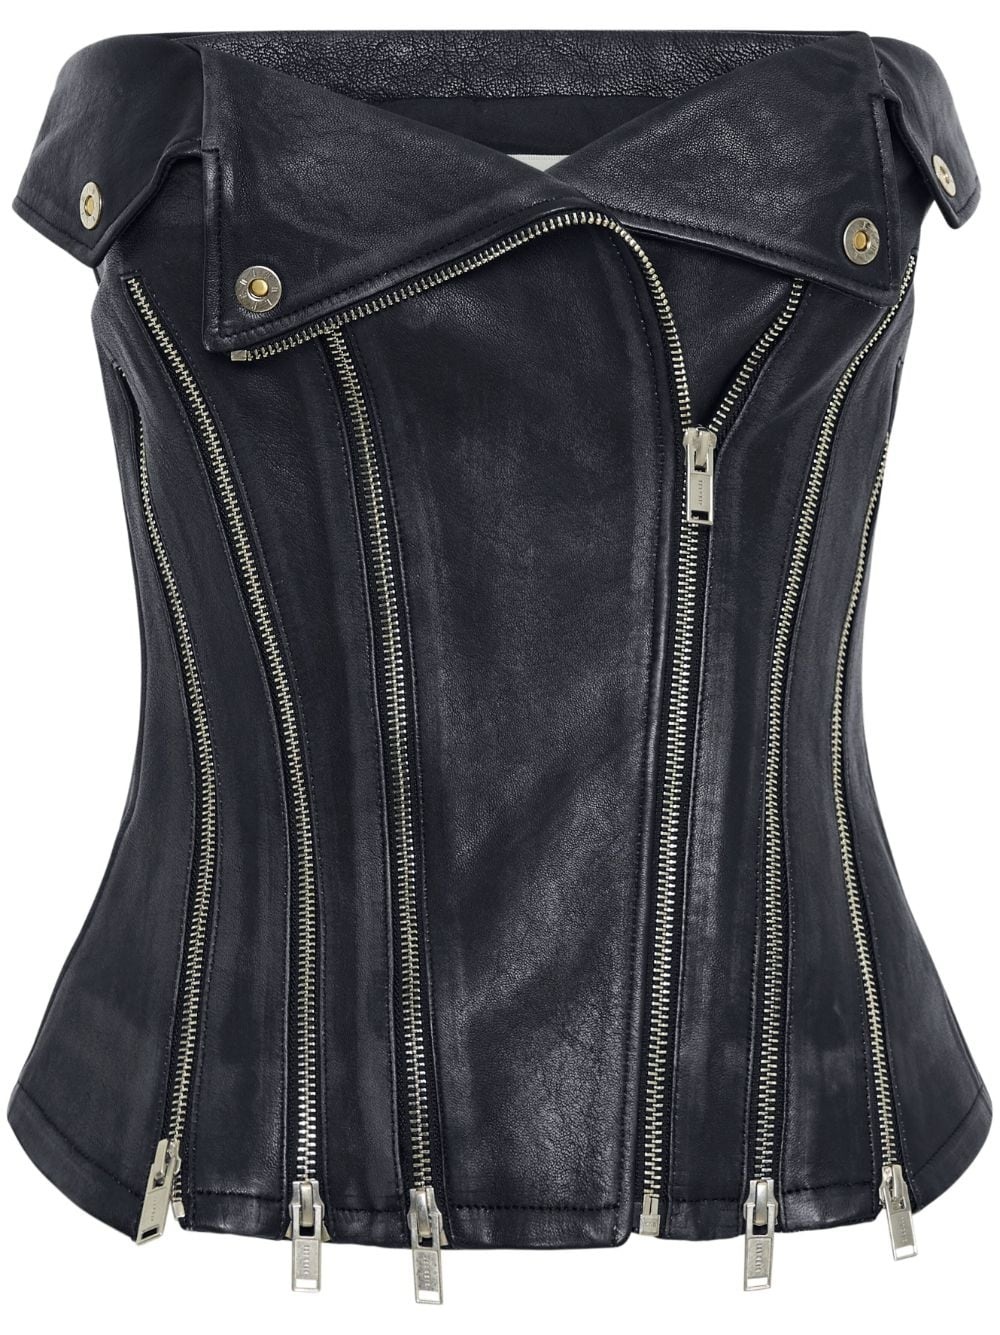 Biker zip-up leather corset - 1